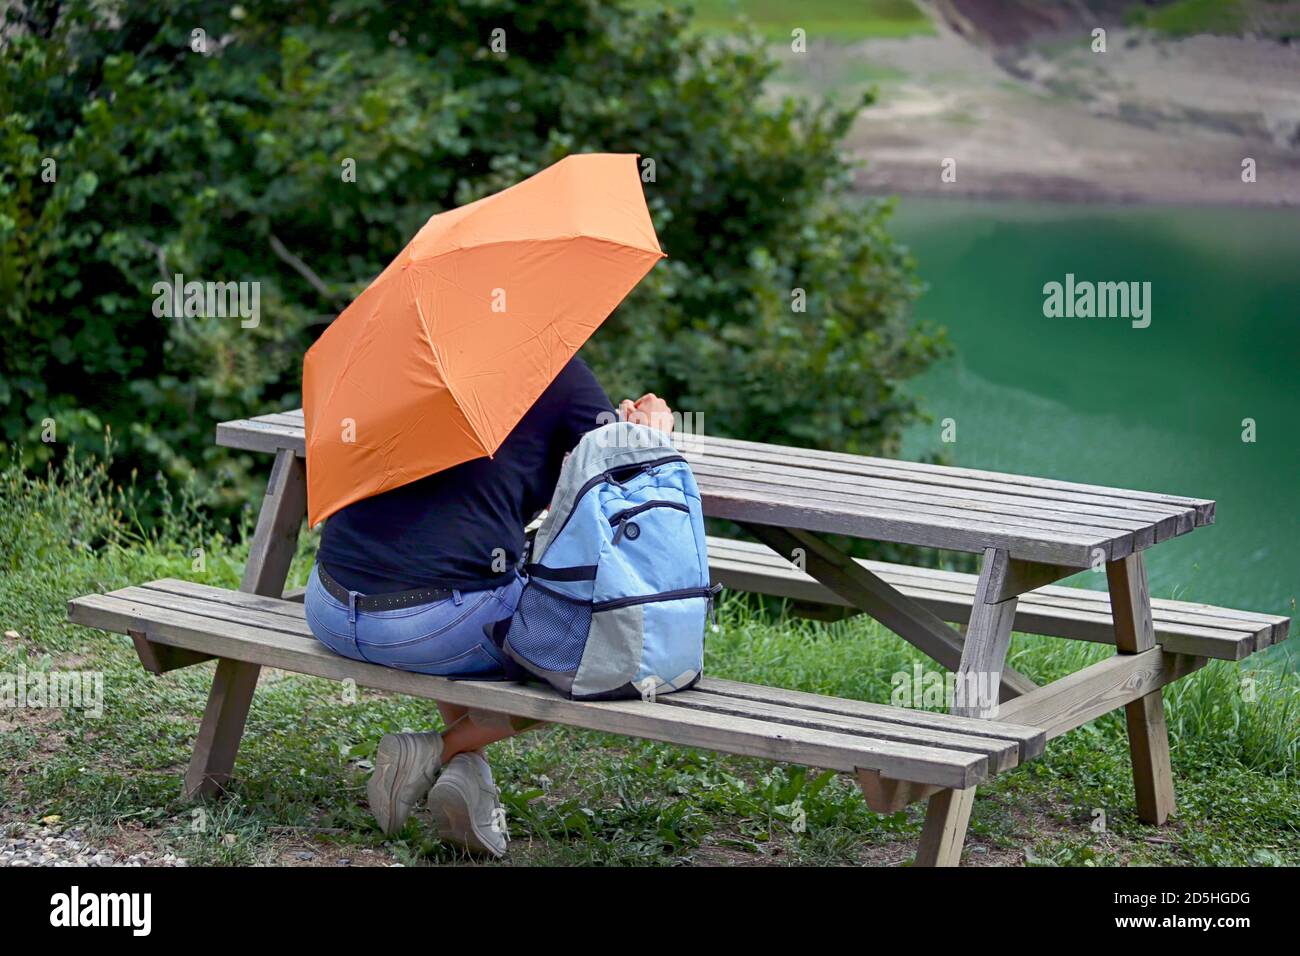 Vue arrière d'un homme avec un parapluie ouvert et un sac à dos qui s'assoit à une table de pique-nique en bois sur une pelouse verte avec des arbres et un lac en arrière-plan. Banque D'Images